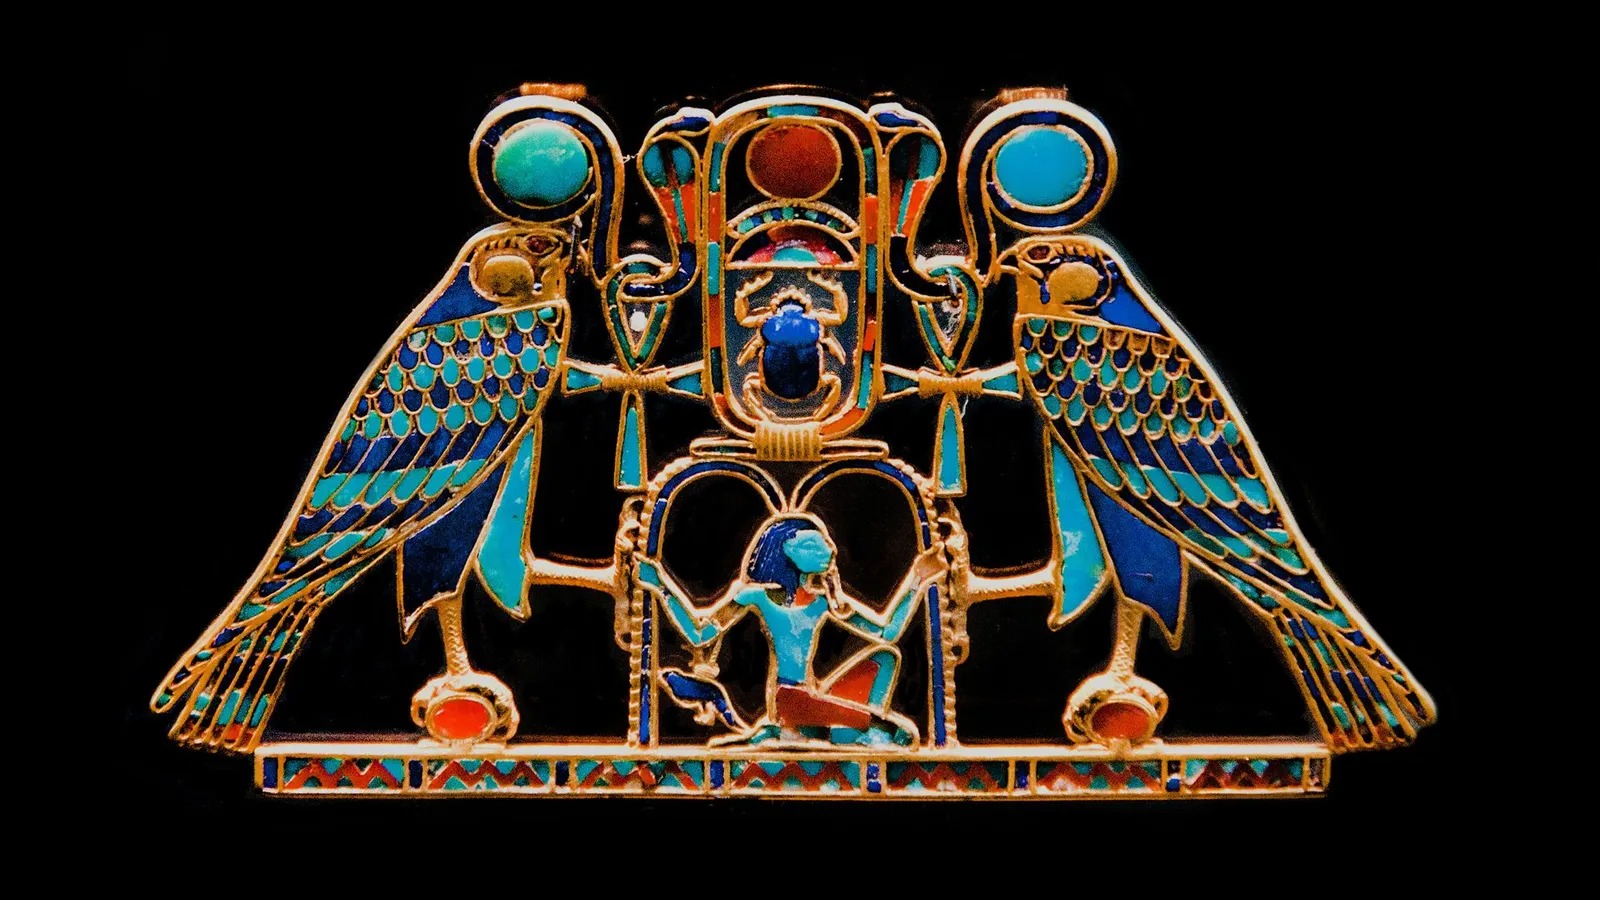 古埃及國王Senwosret ll(公元前1887-1878年)定製的金-石榴石項鍊(資料來源:Alamy)